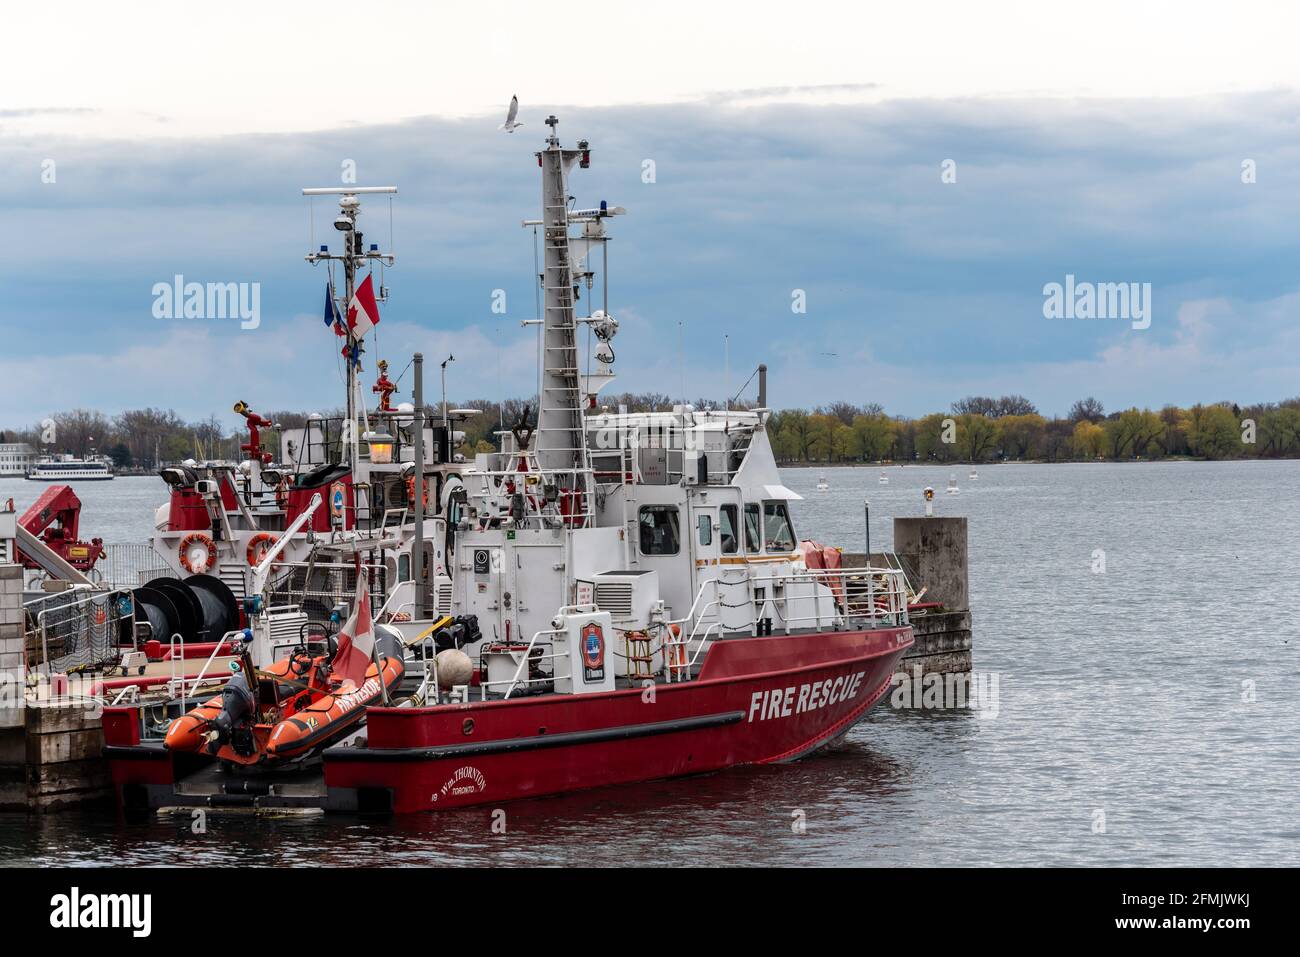 WM. Thornton bateau de sauvetage incendie dans le lac Ontario, dans le secteur riverain de Toronto, Canada Banque D'Images